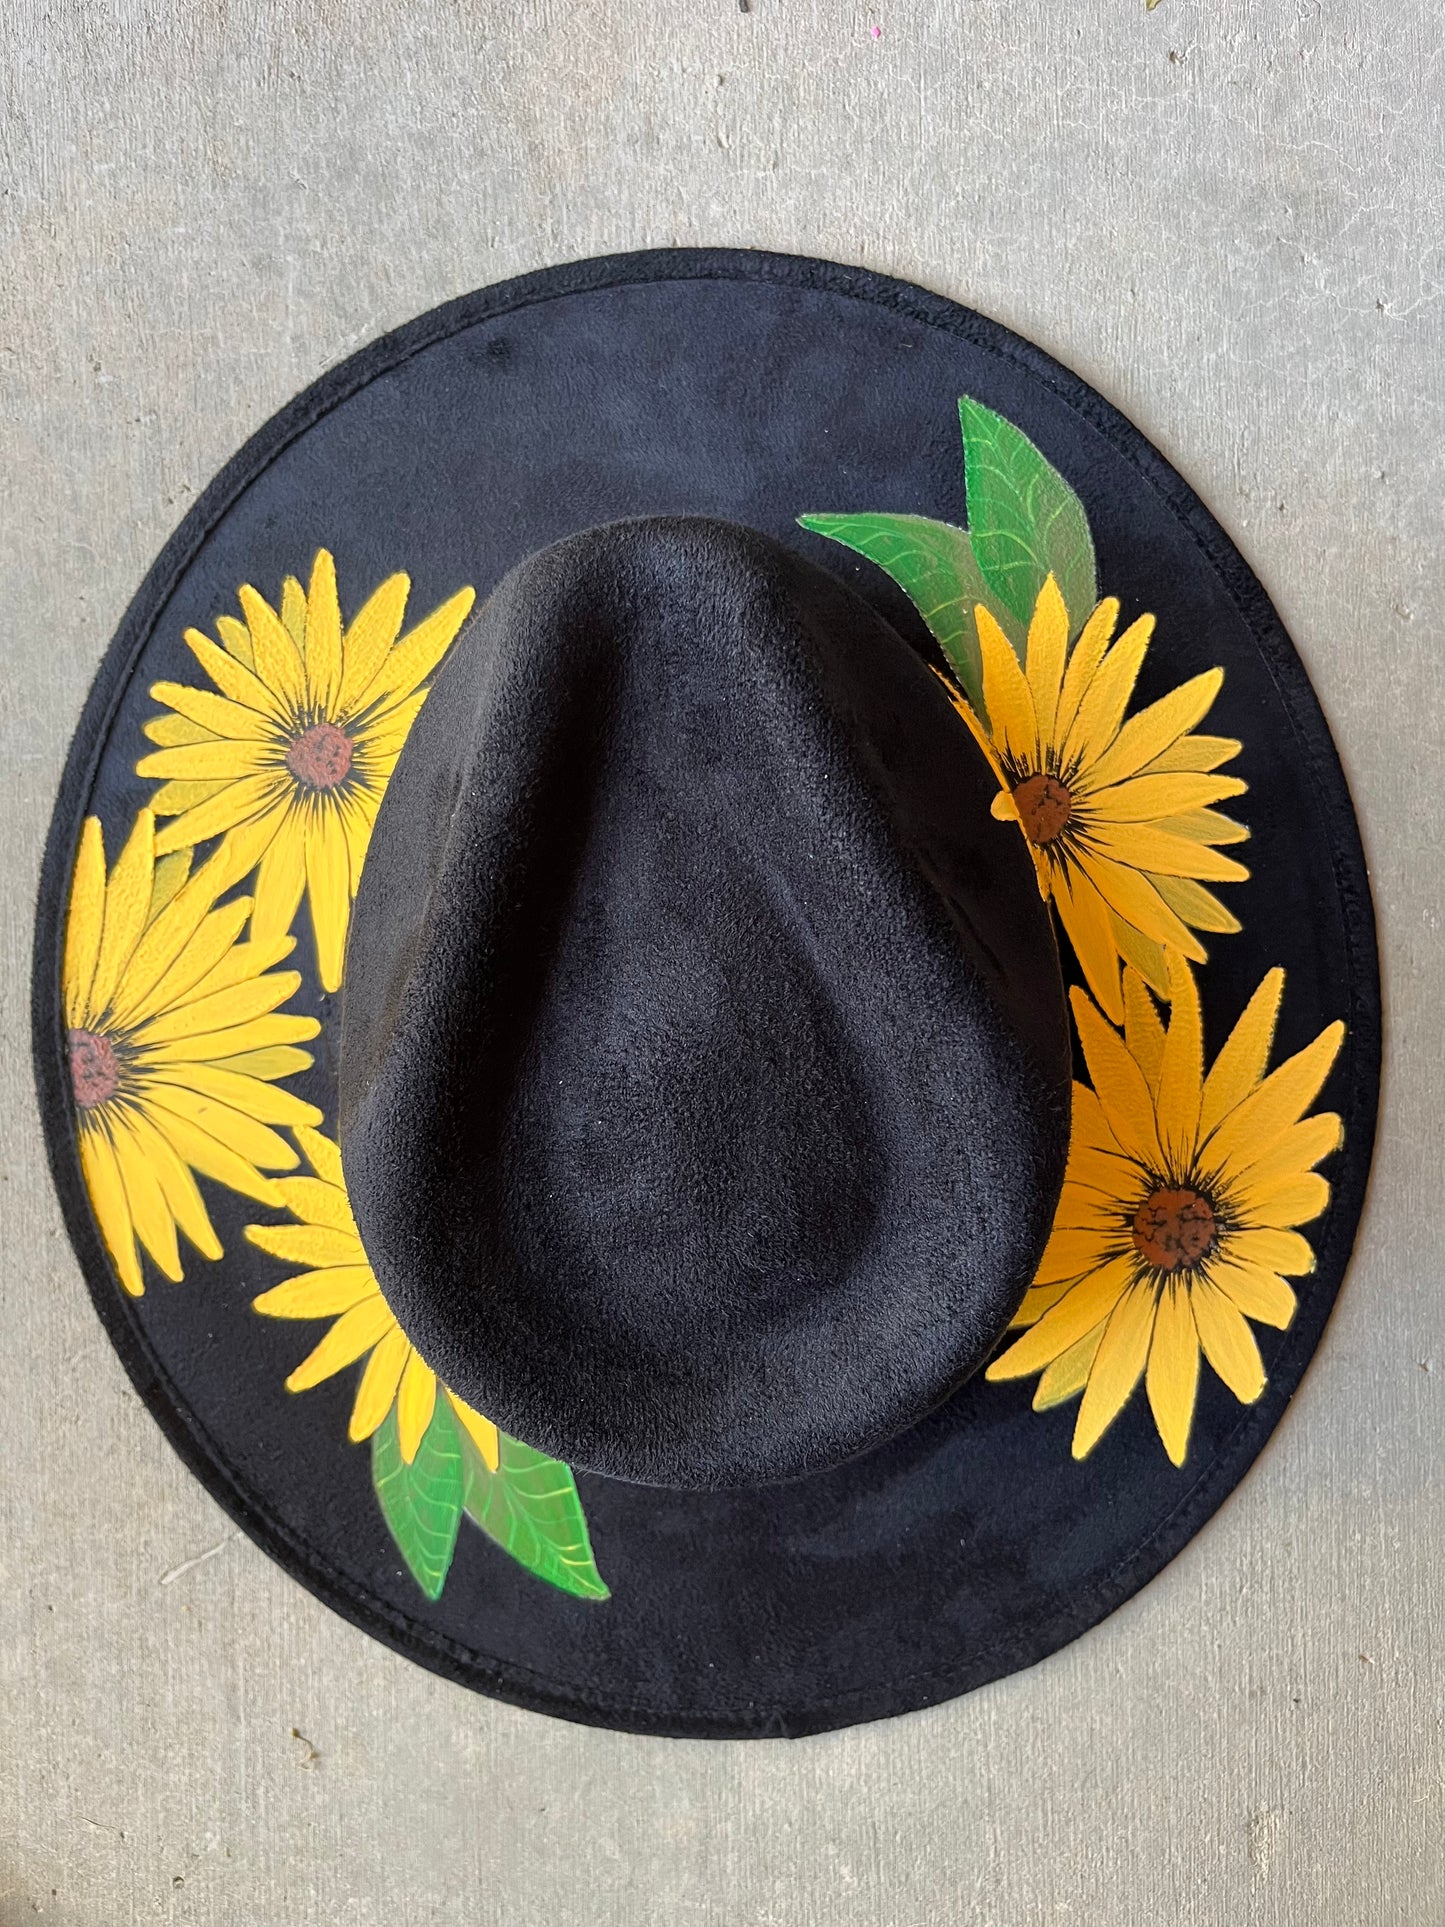 Sunflowers black suede wide brim rancher hat